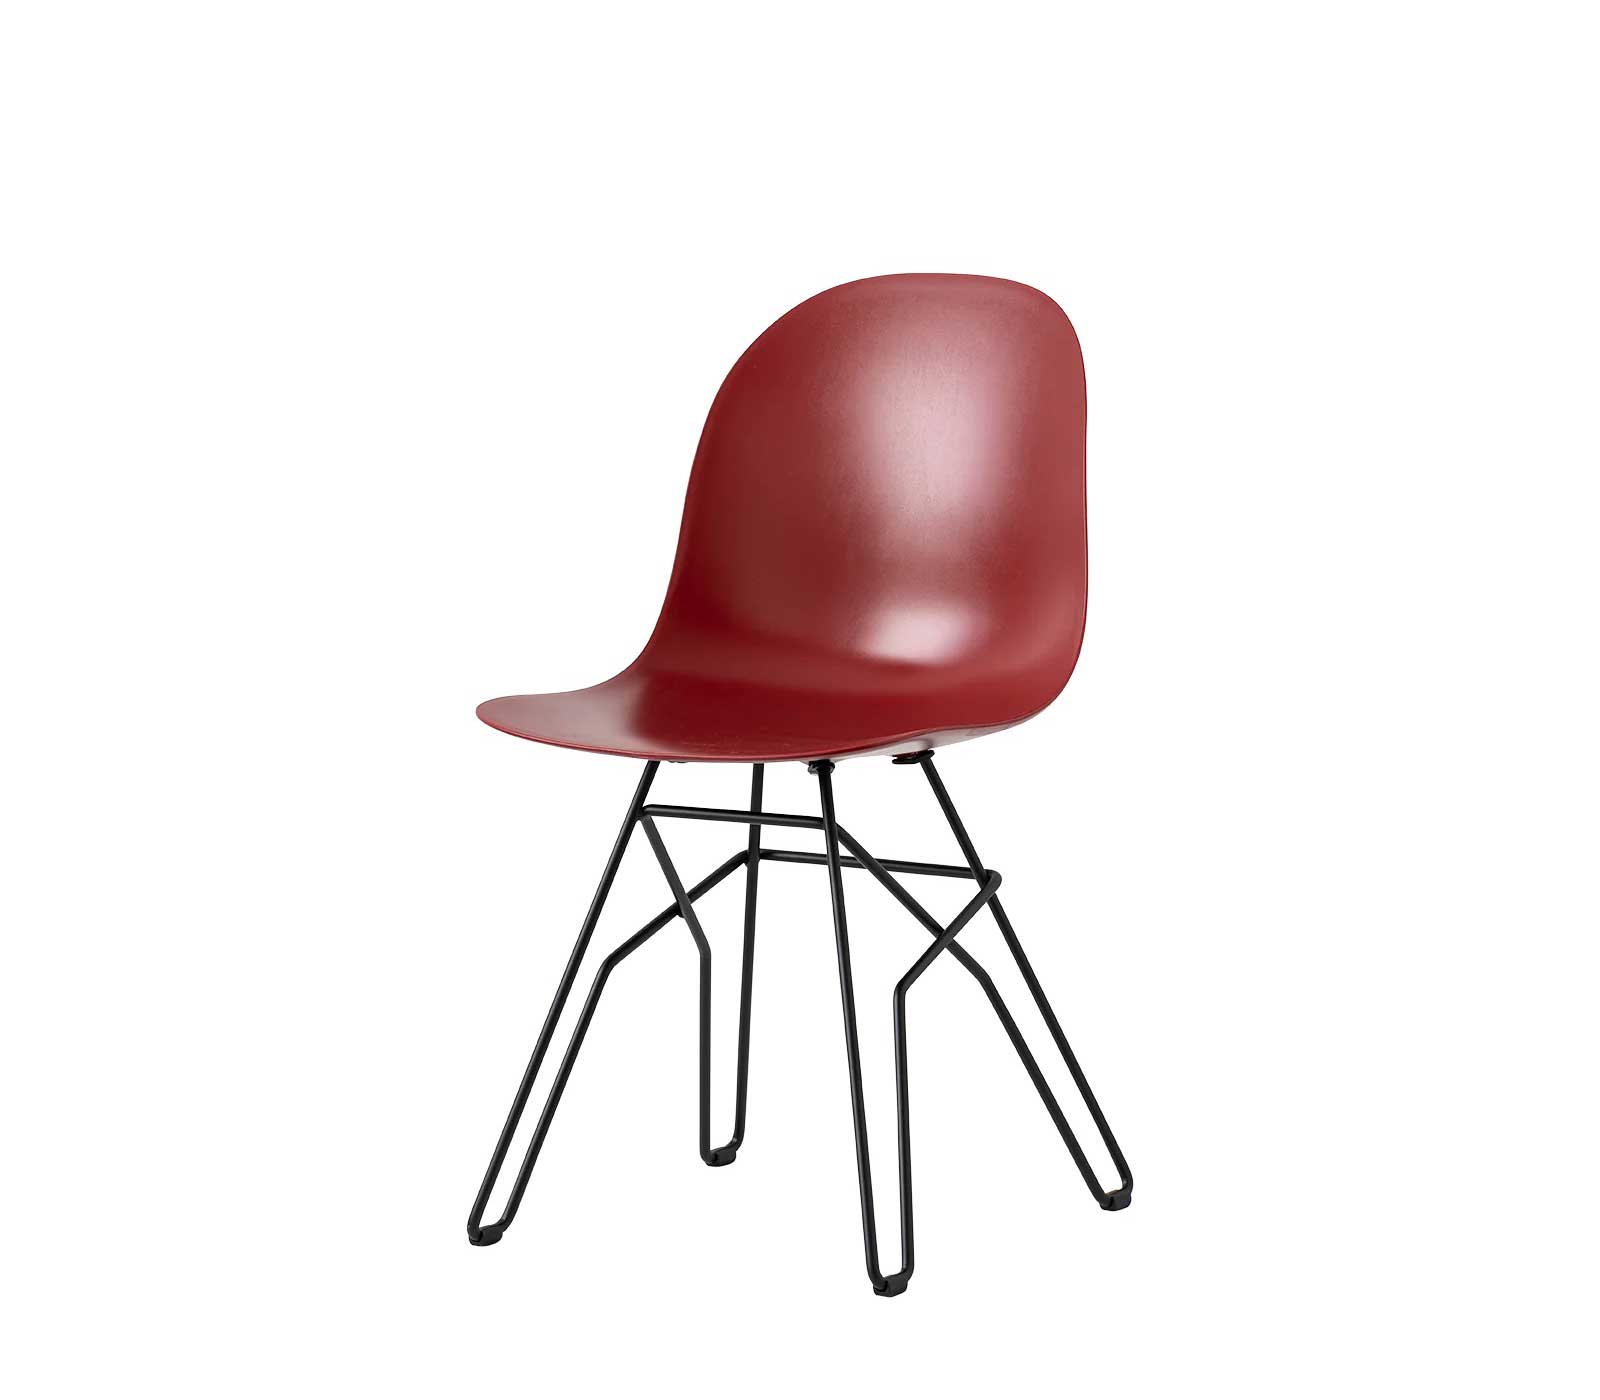 Sedia senza braccioli Connubia Academy con sedile in policarbonato e struttura in tondino intrecciato in metallo